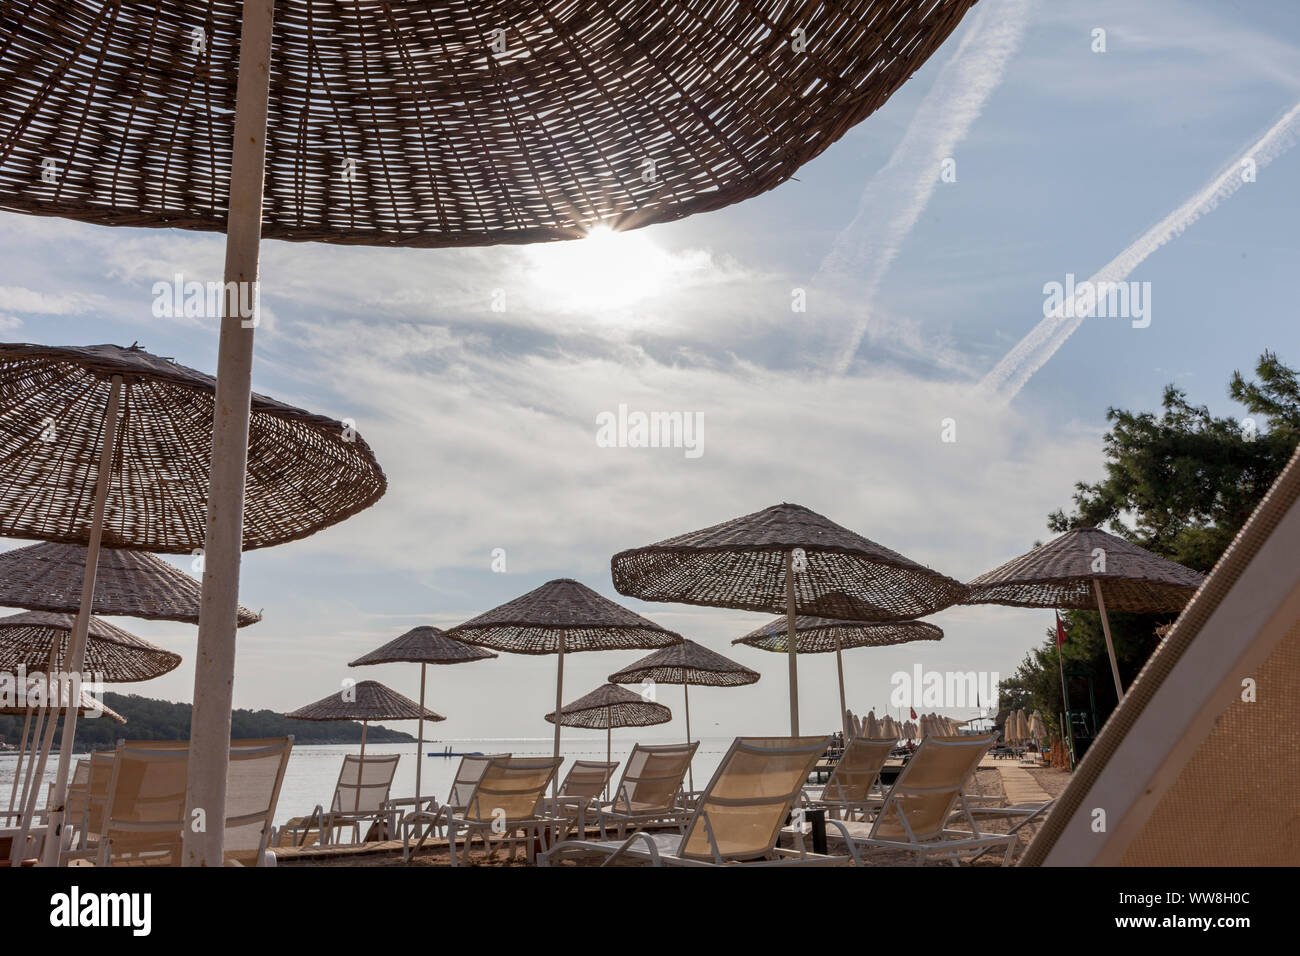 Ombrelloni e sdraio in spiaggia con nessuno, bassa stagione al mattino, a sud di Bodrum, Turchia, Foto Stock